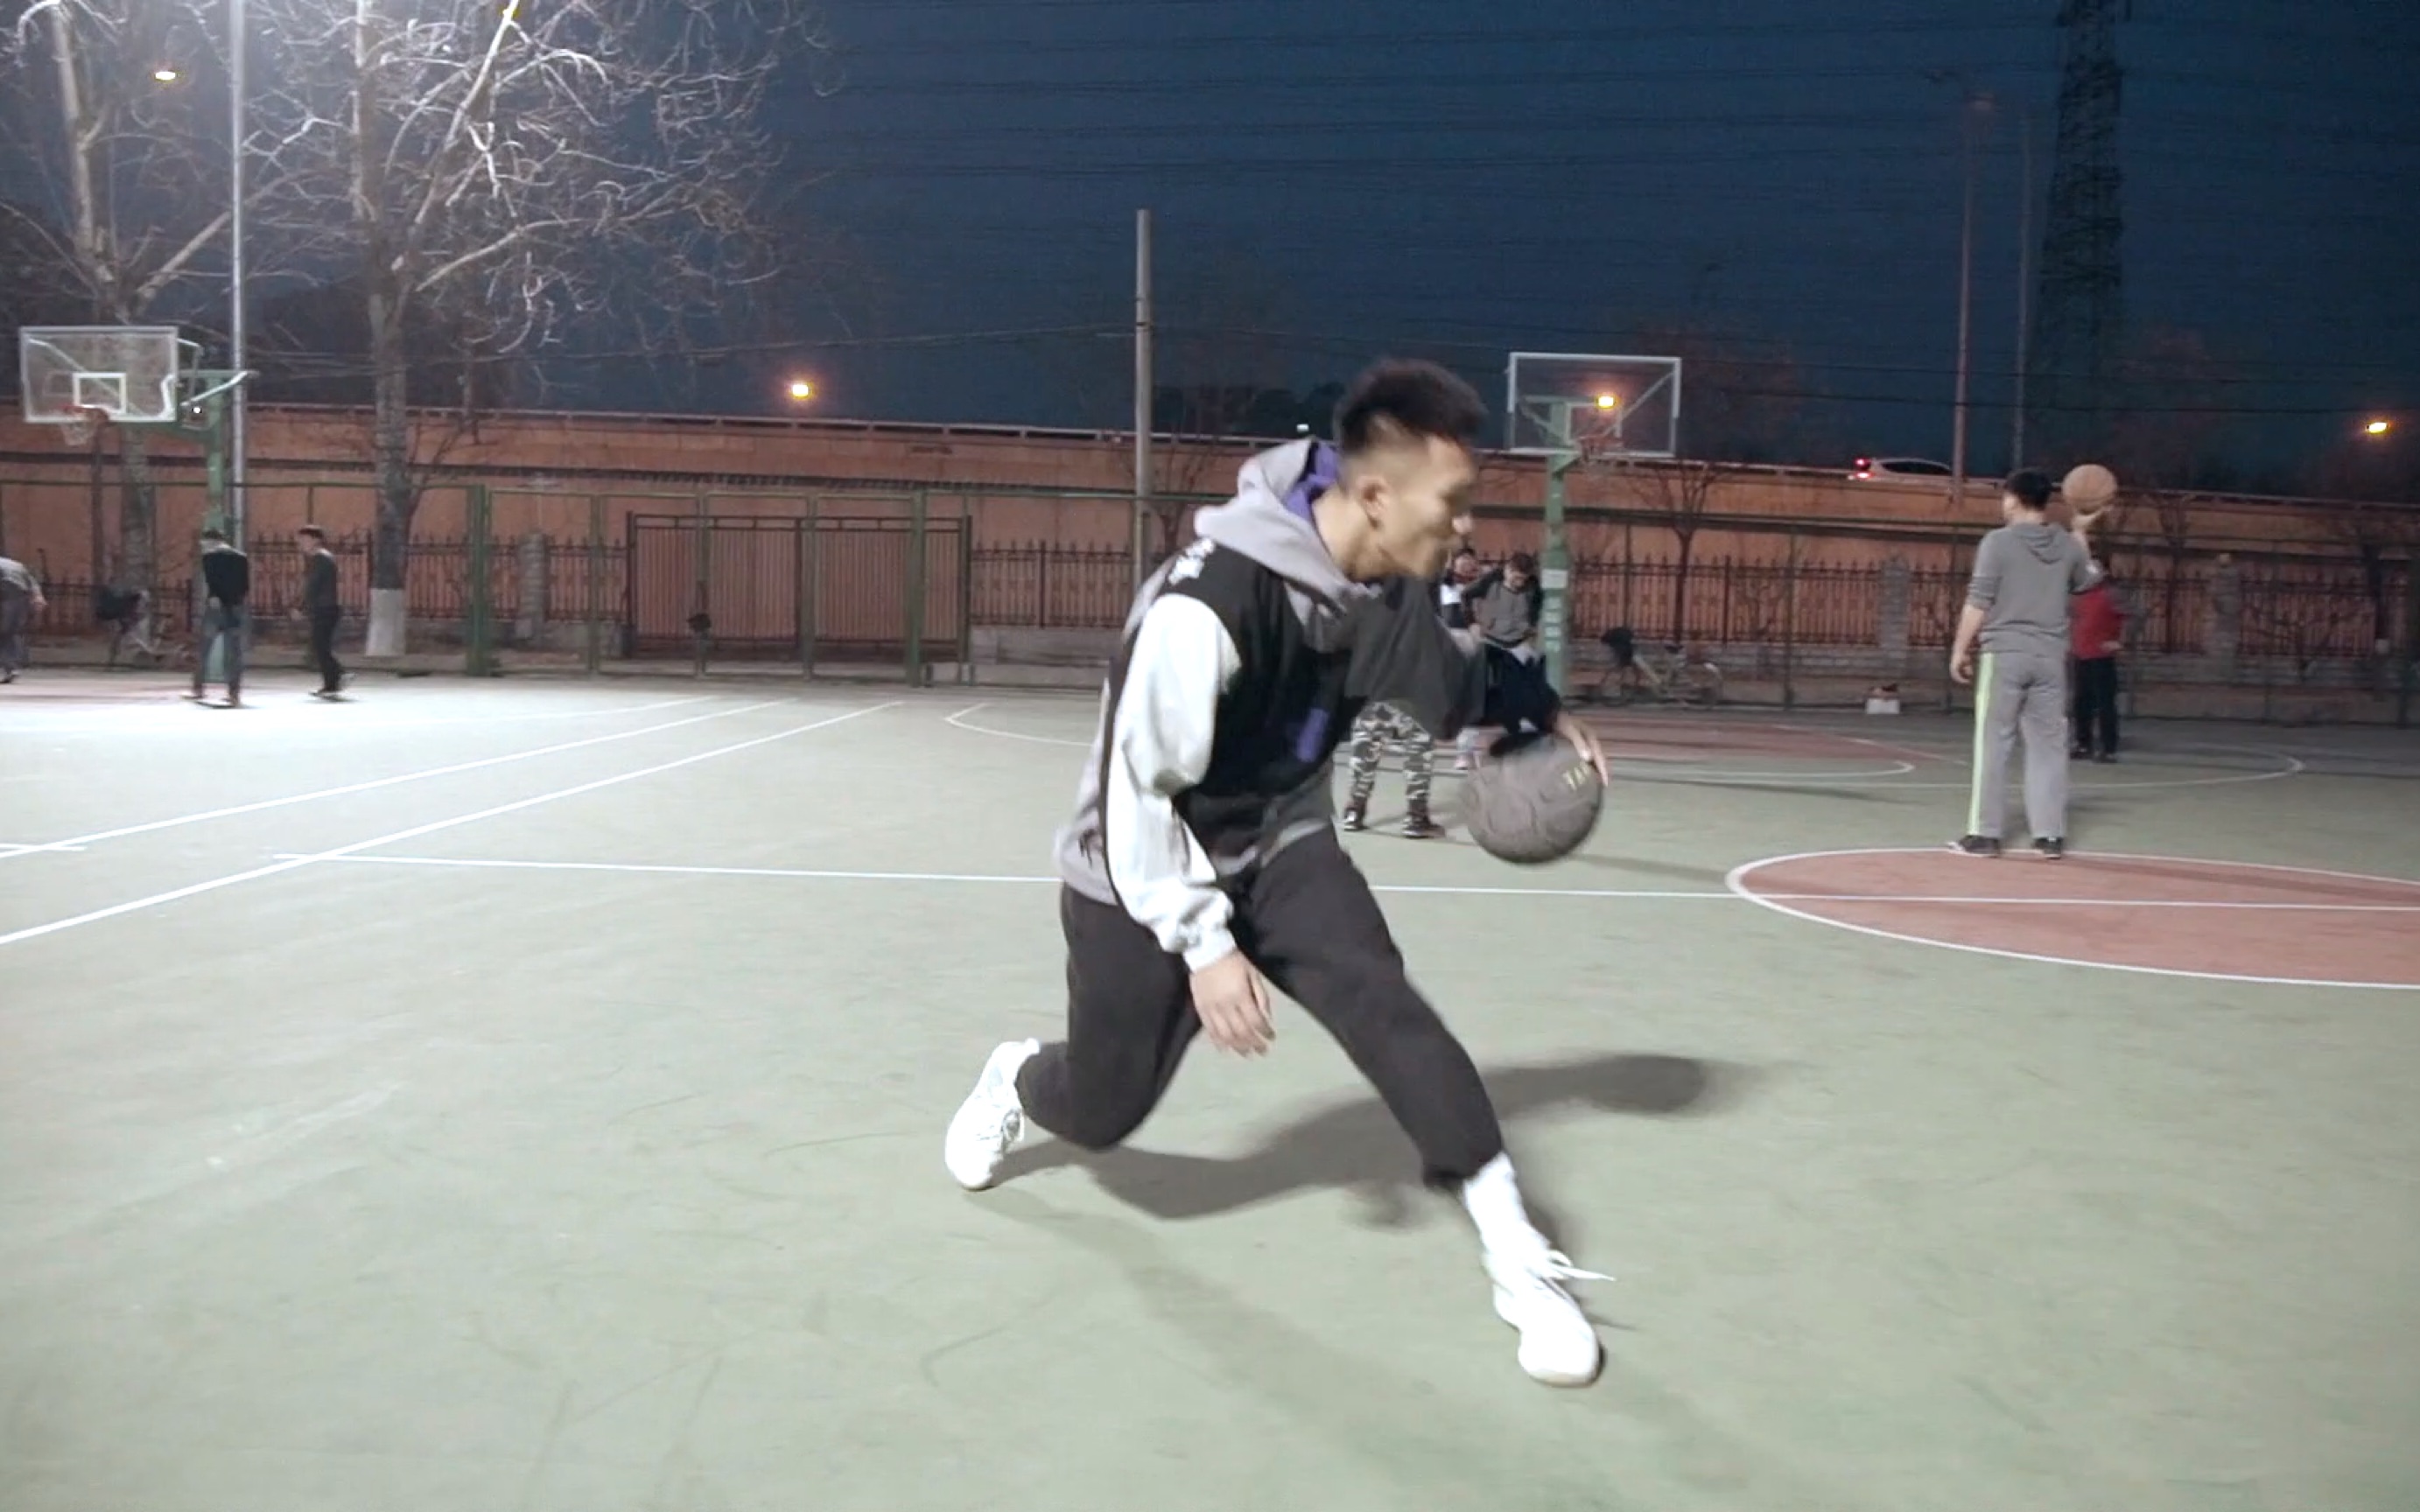 我叫闫帅，打街球的都叫我YESER也可以叫夜色。篮球是我的生活，是我的语言，是我的养分。我会不定期分享干货给大家，希望大家支持我